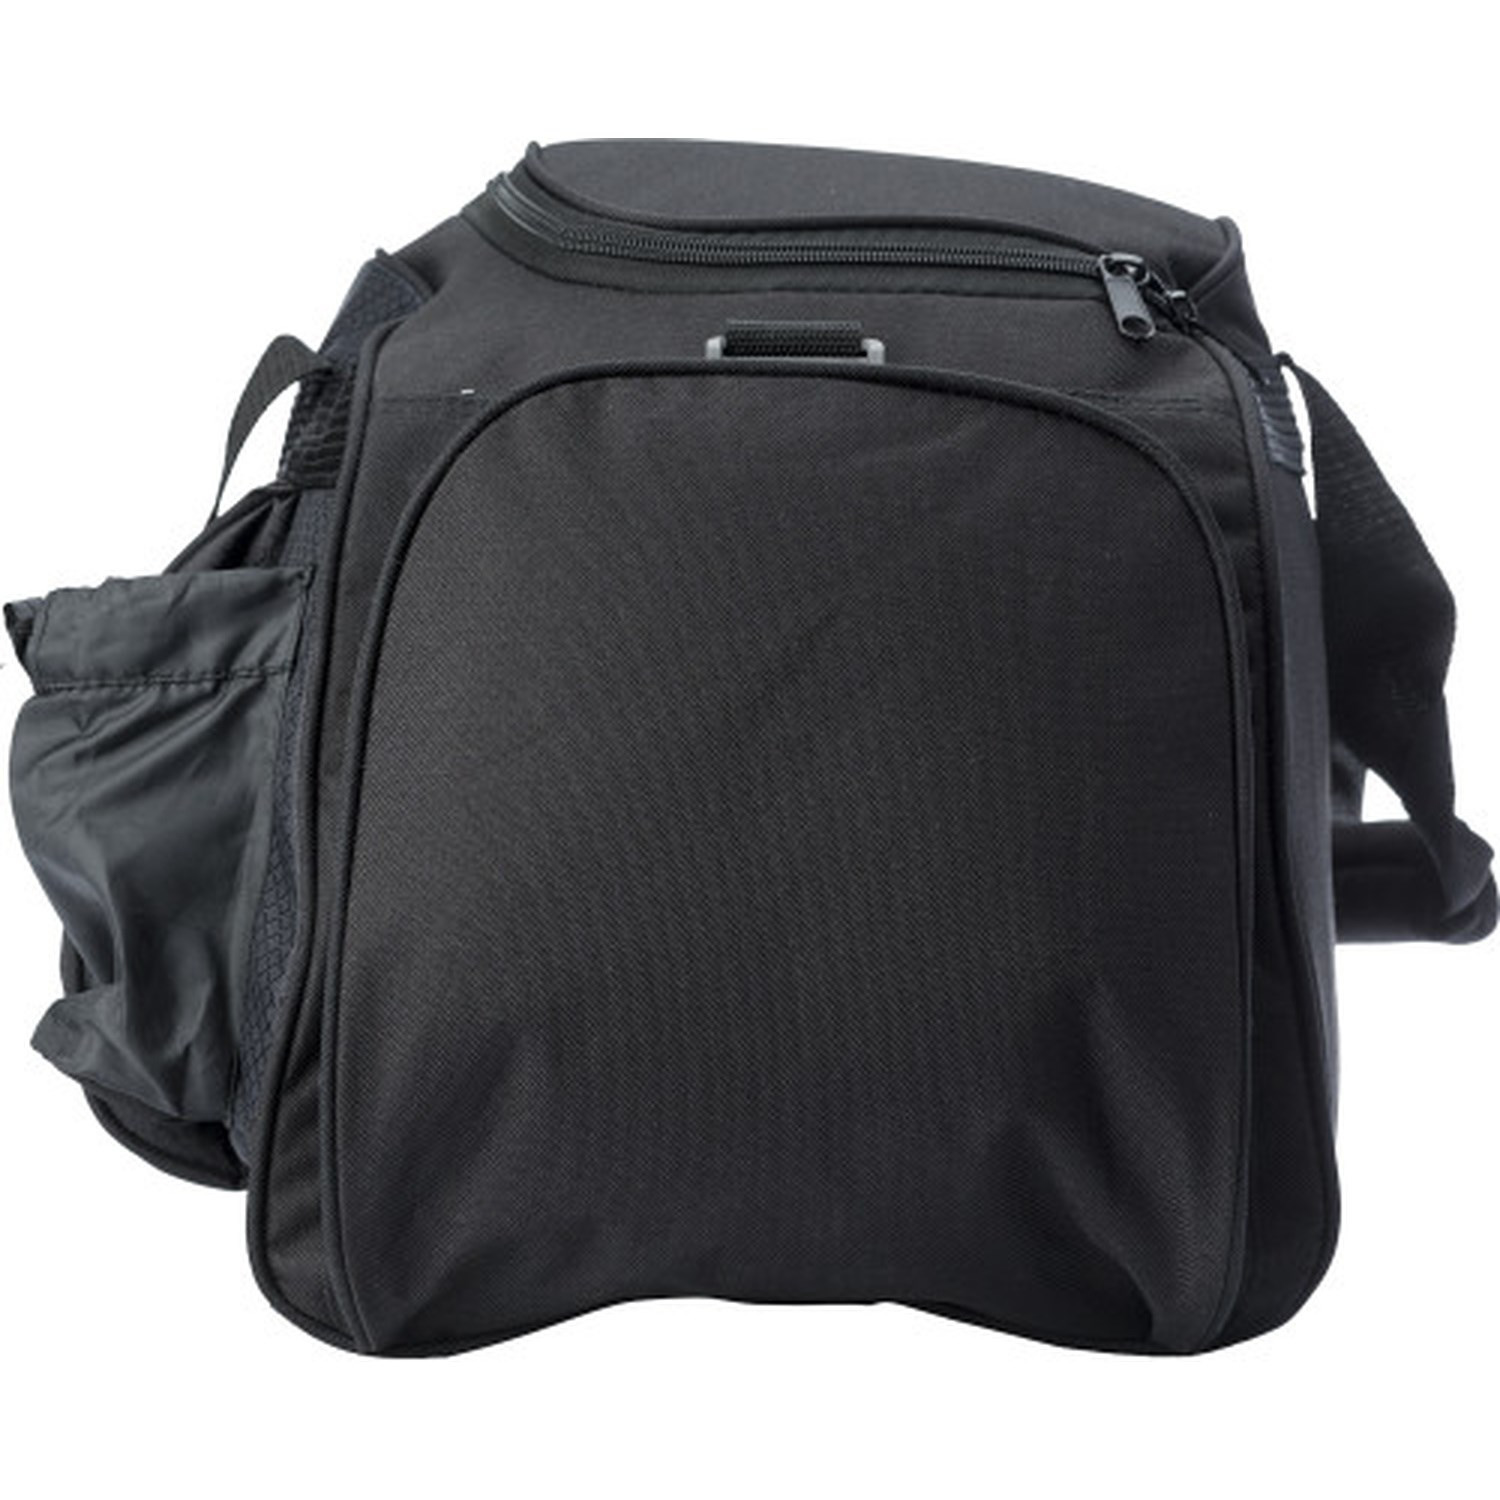 Sports Travel Bag in black showing side pocket